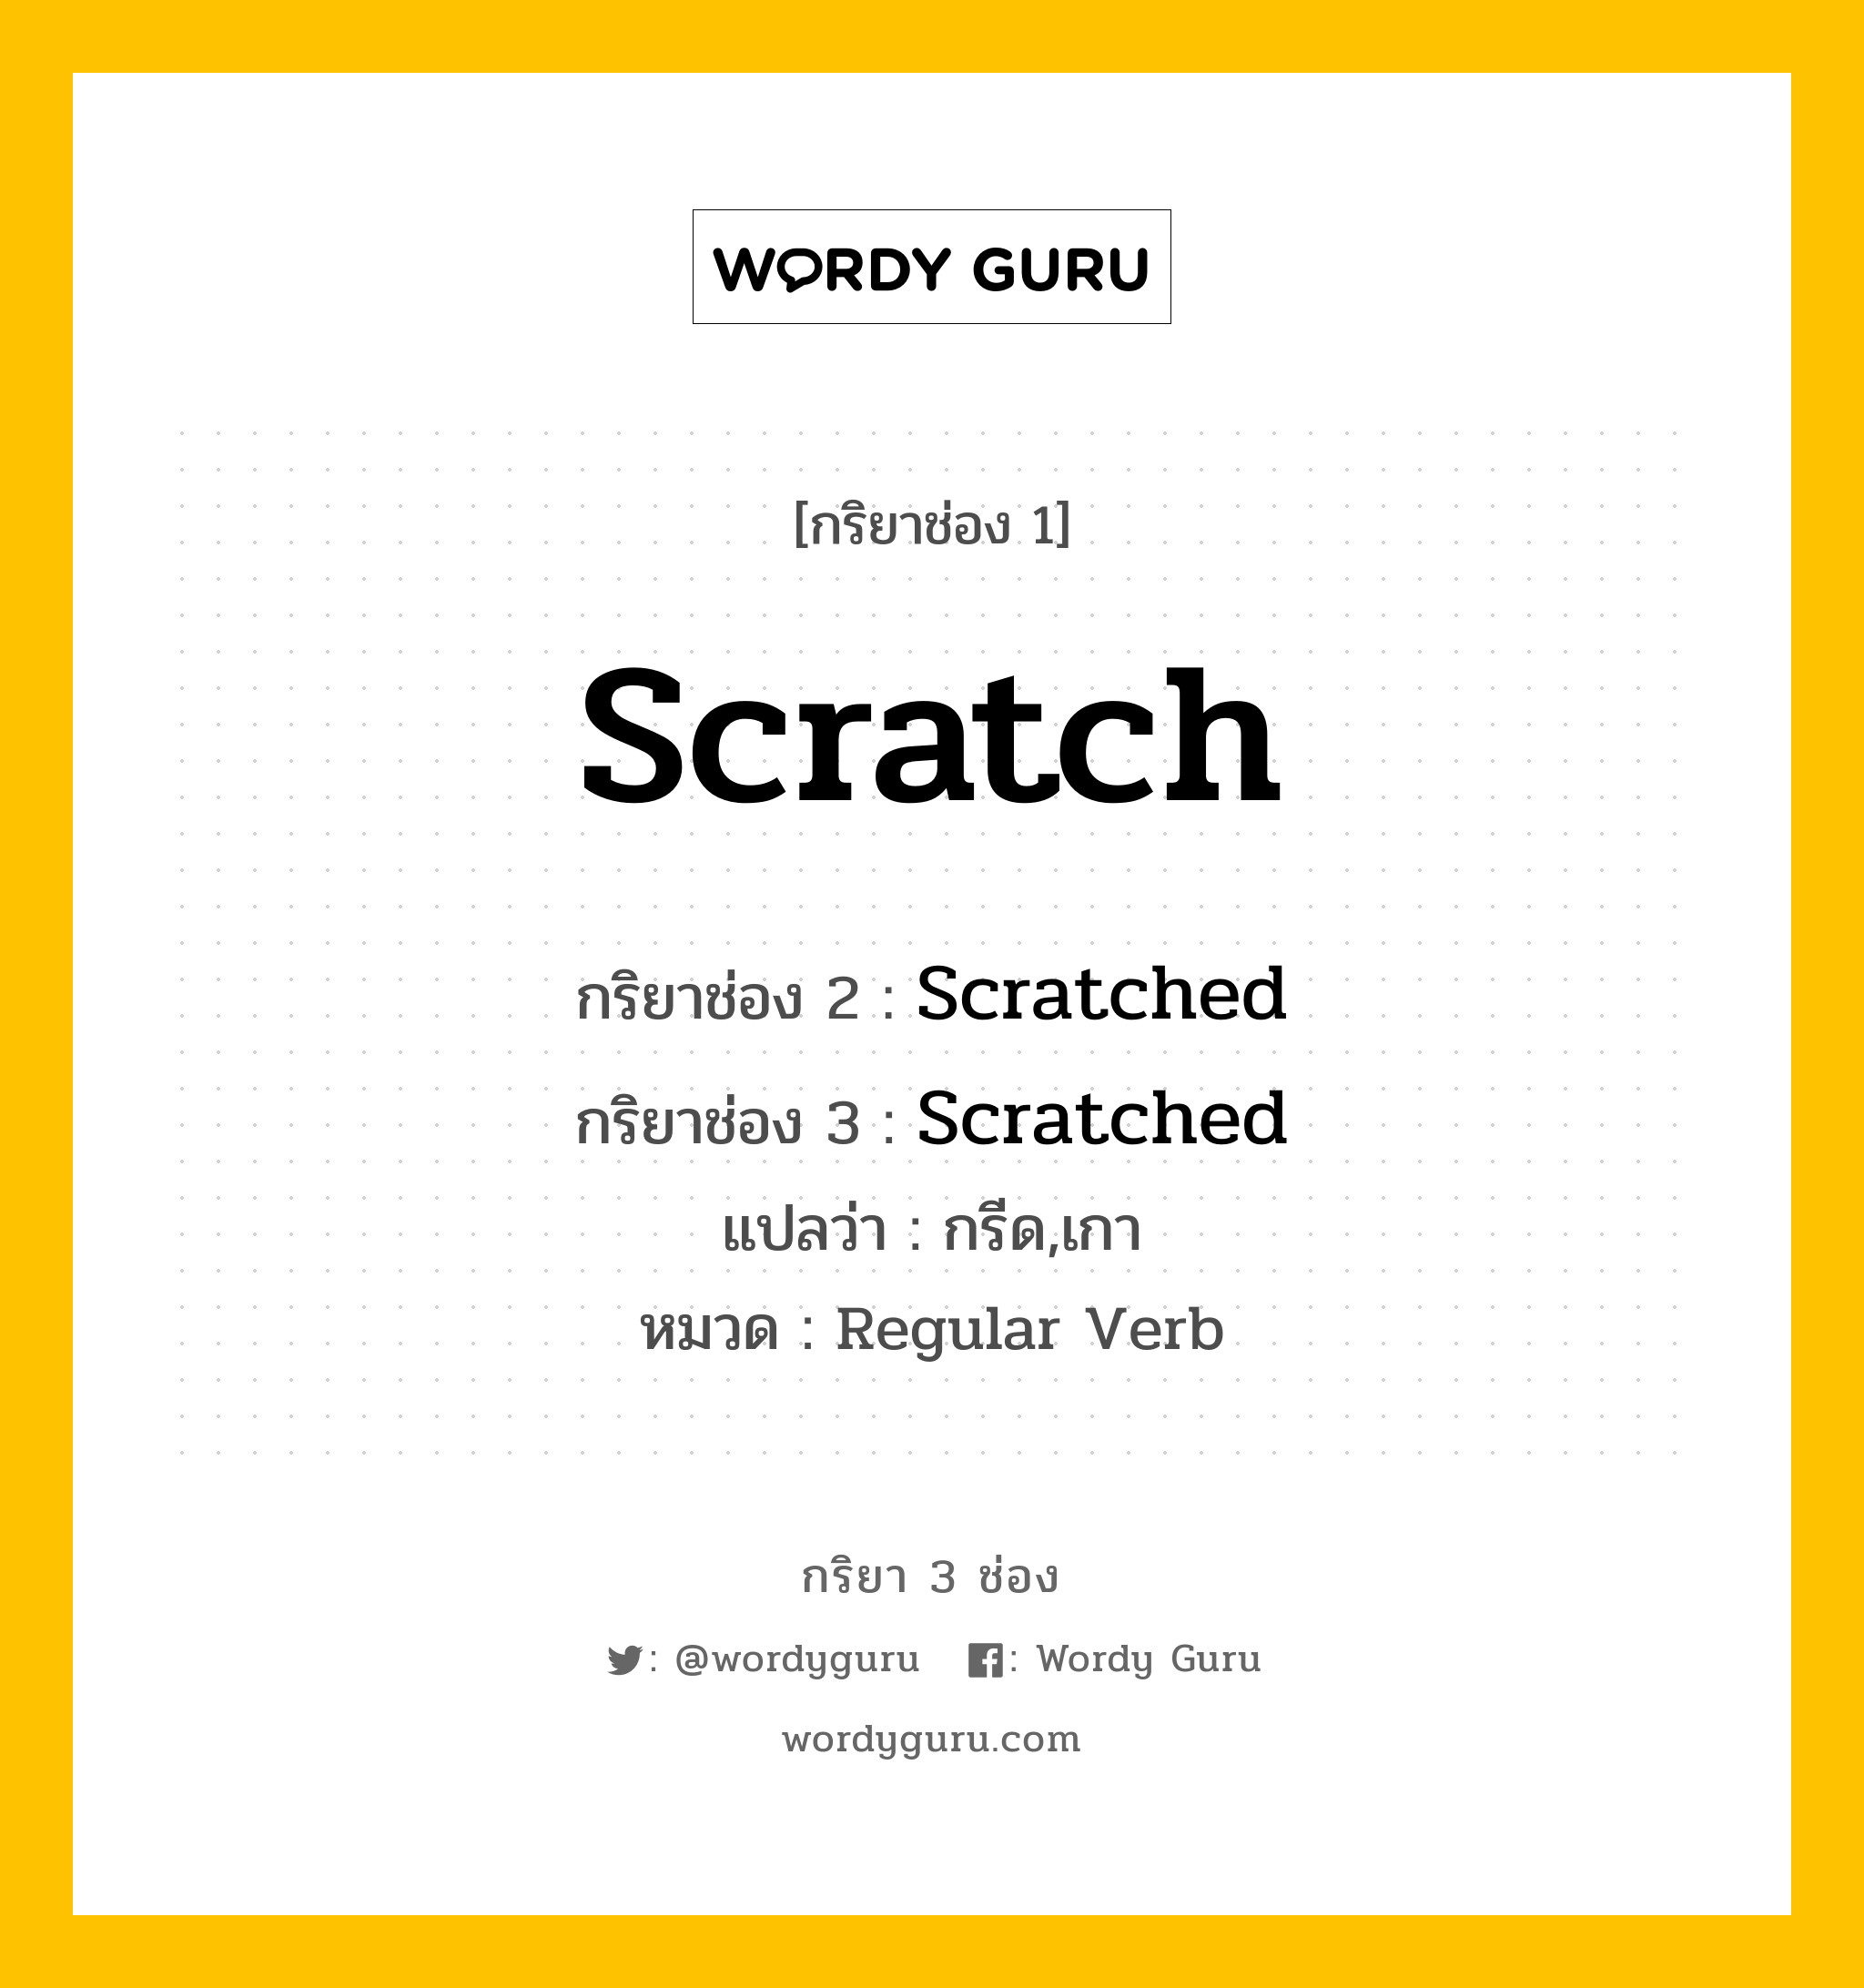 กริยา 3 ช่อง ของ Scratch คืออะไร? มาดูคำอ่าน คำแปลกันเลย, กริยาช่อง 1 Scratch กริยาช่อง 2 Scratched กริยาช่อง 3 Scratched แปลว่า กรีด,เกา หมวด Regular Verb หมวด Regular Verb